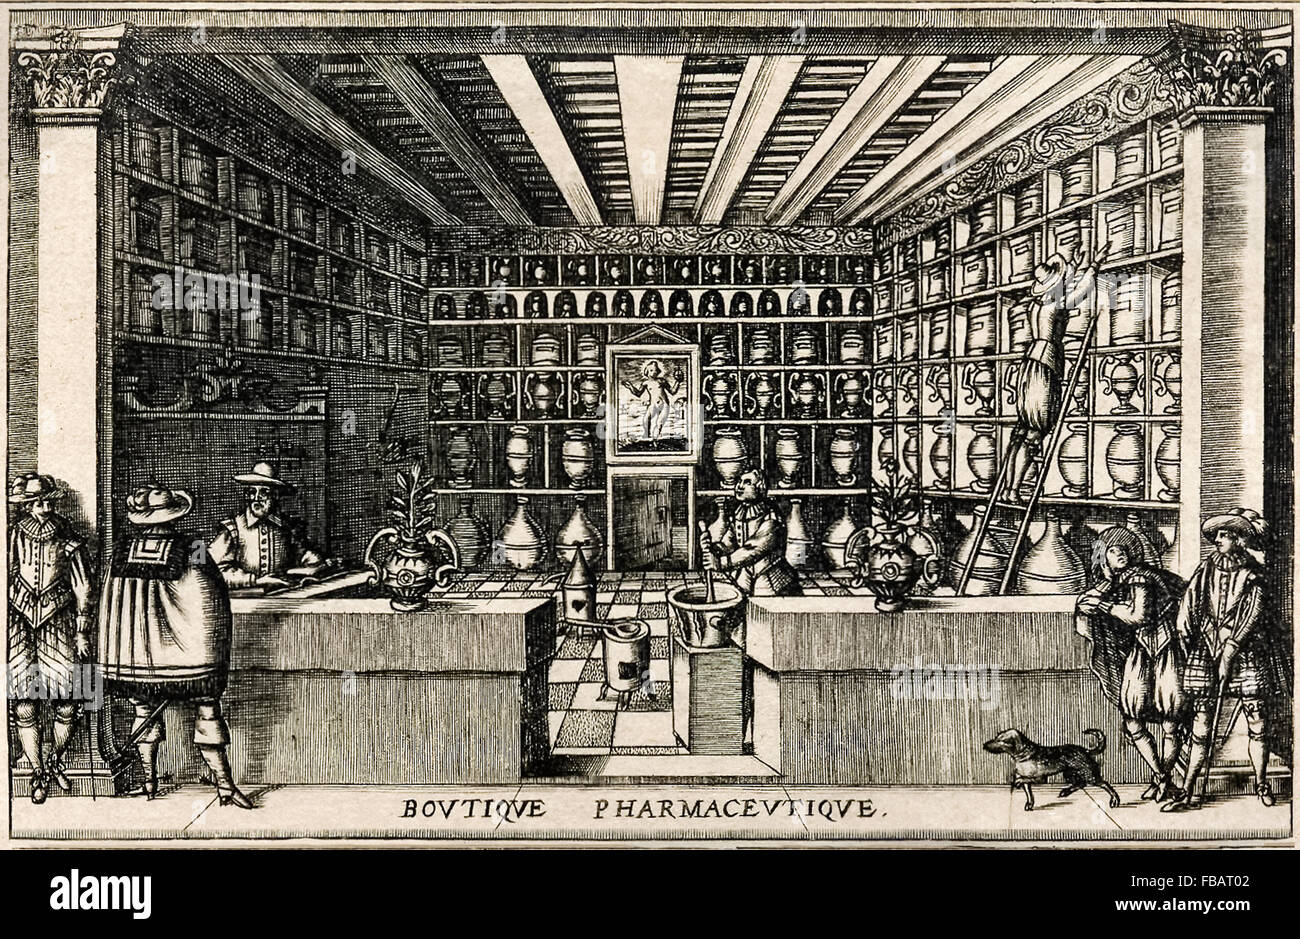 Darstellung, die innen von einem französischen Apotheker (Apotheker) im frühen 17. Jahrhundert. Siehe Beschreibung für mehr Informationen. Stockfoto